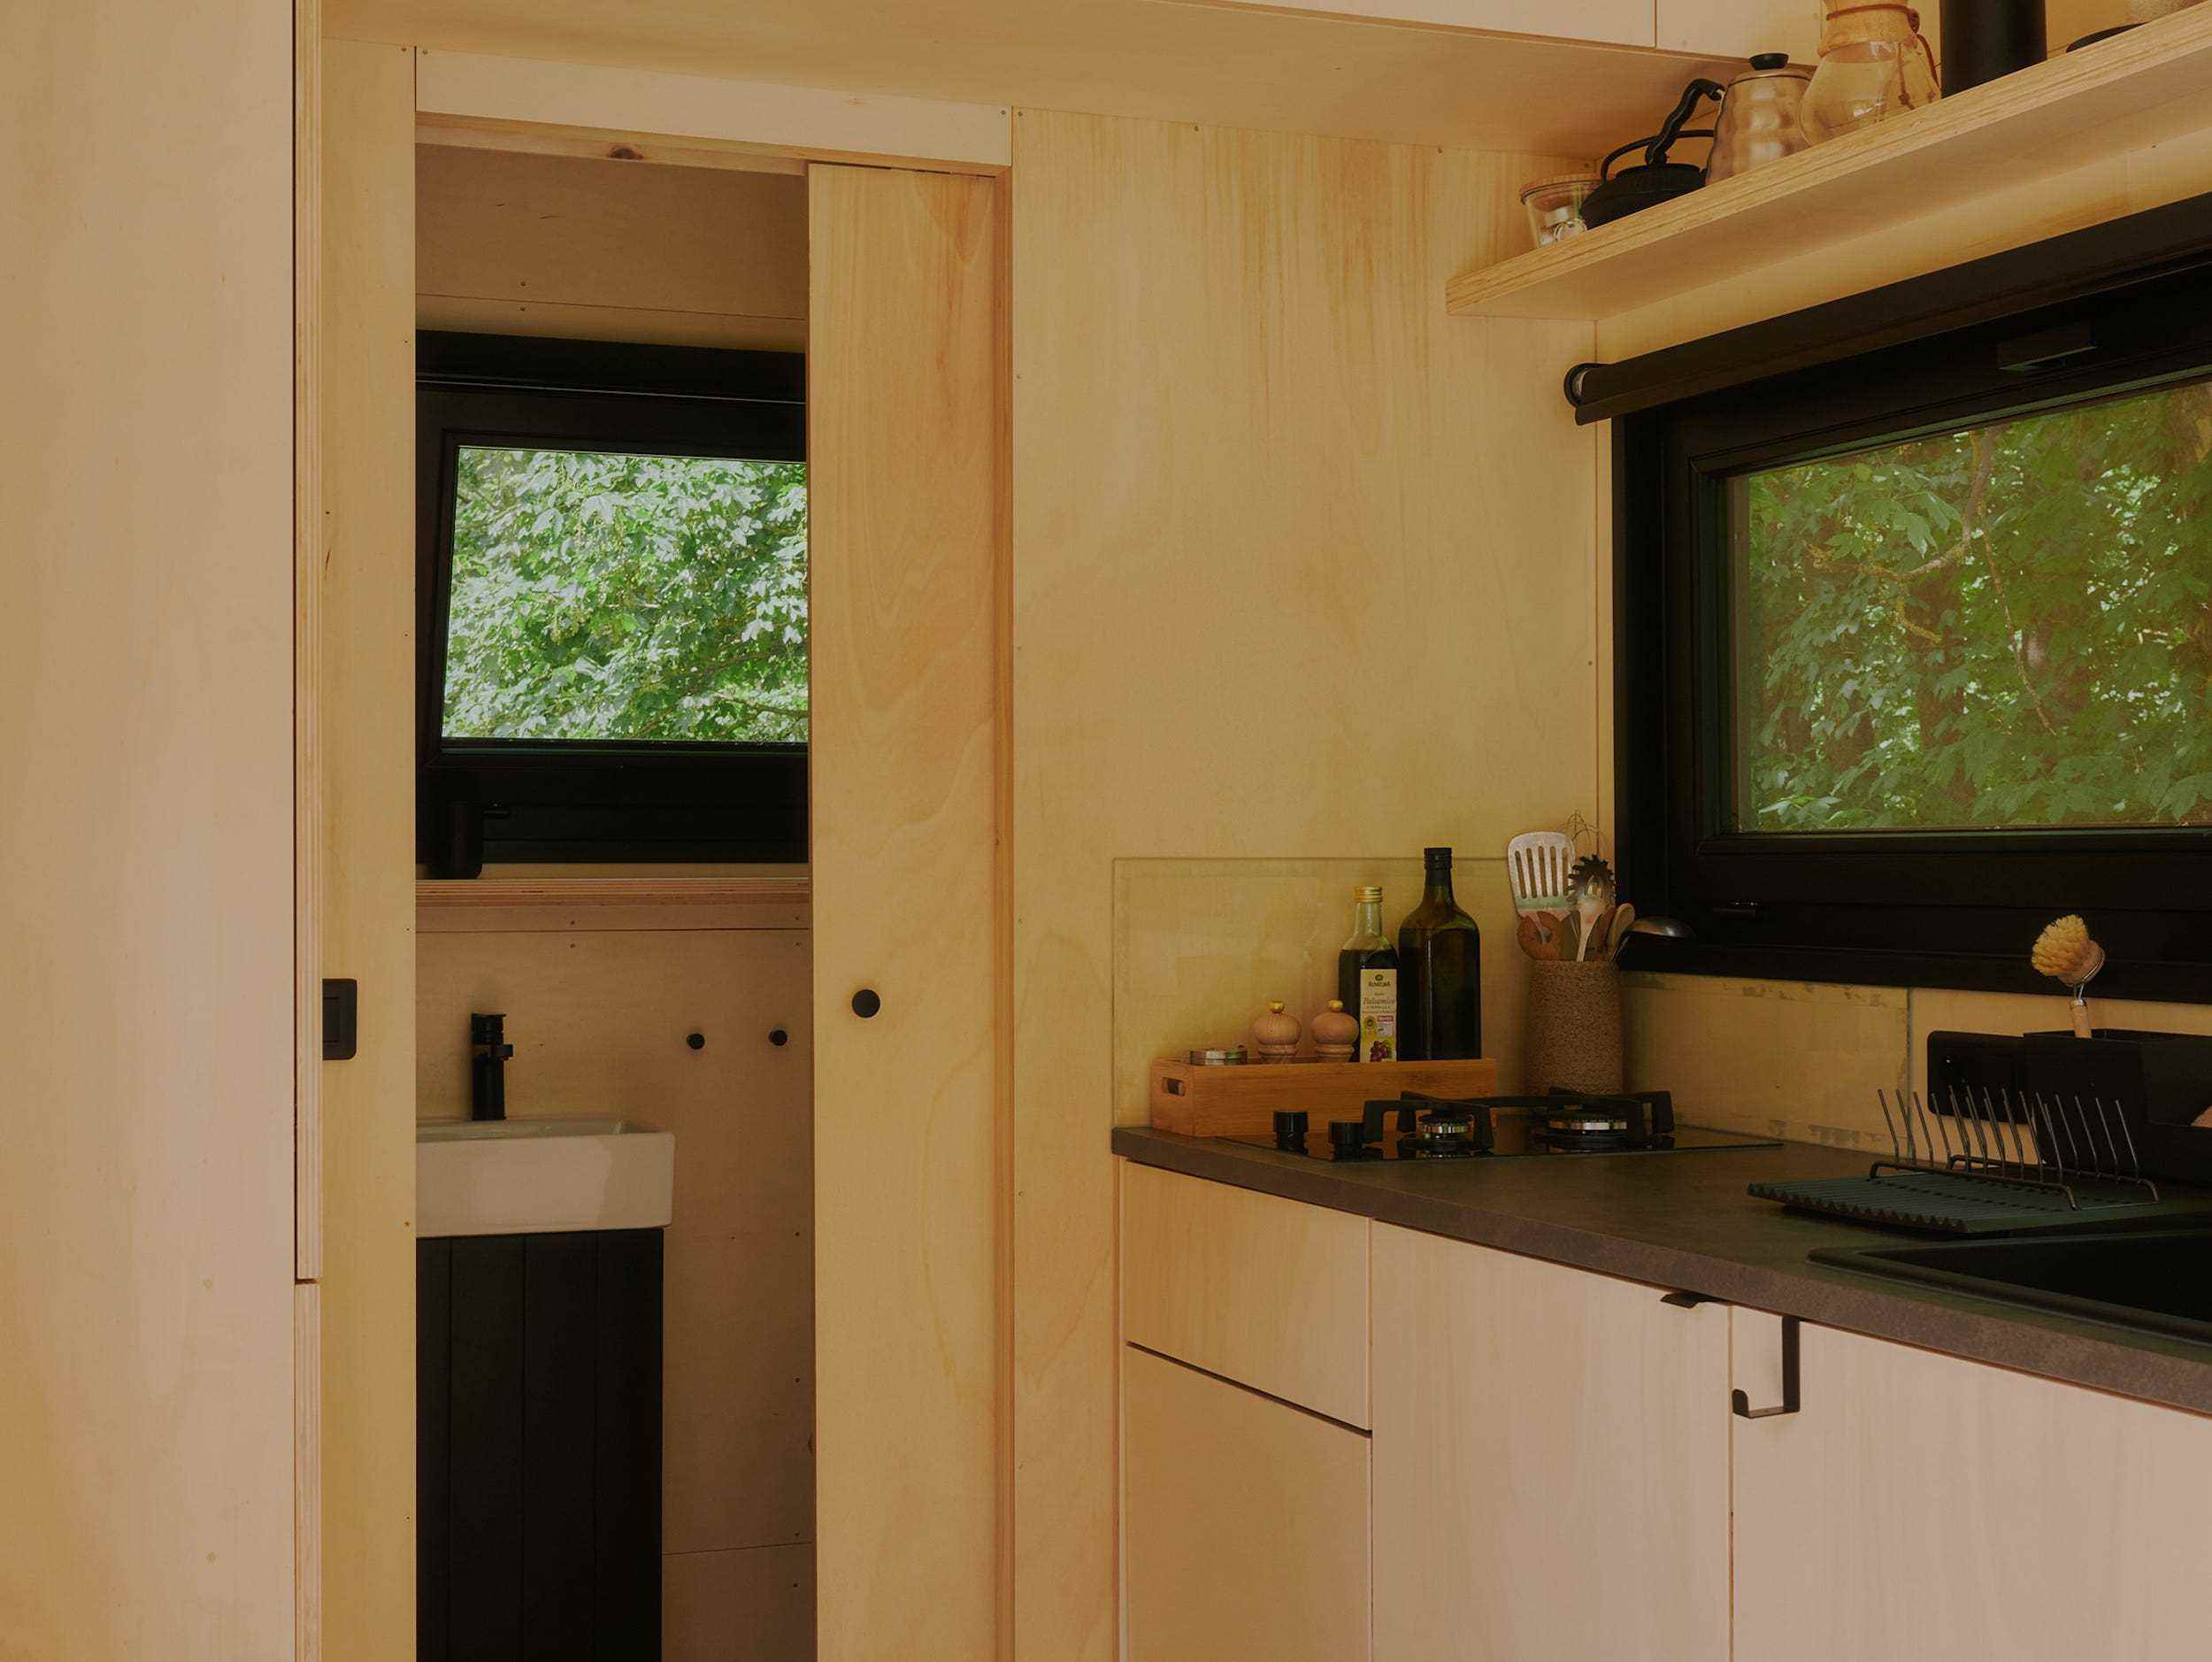 Ein Blick in eine Raus-Hütte mit Bad, Küche, Fenstern mit Blick in die Natur.